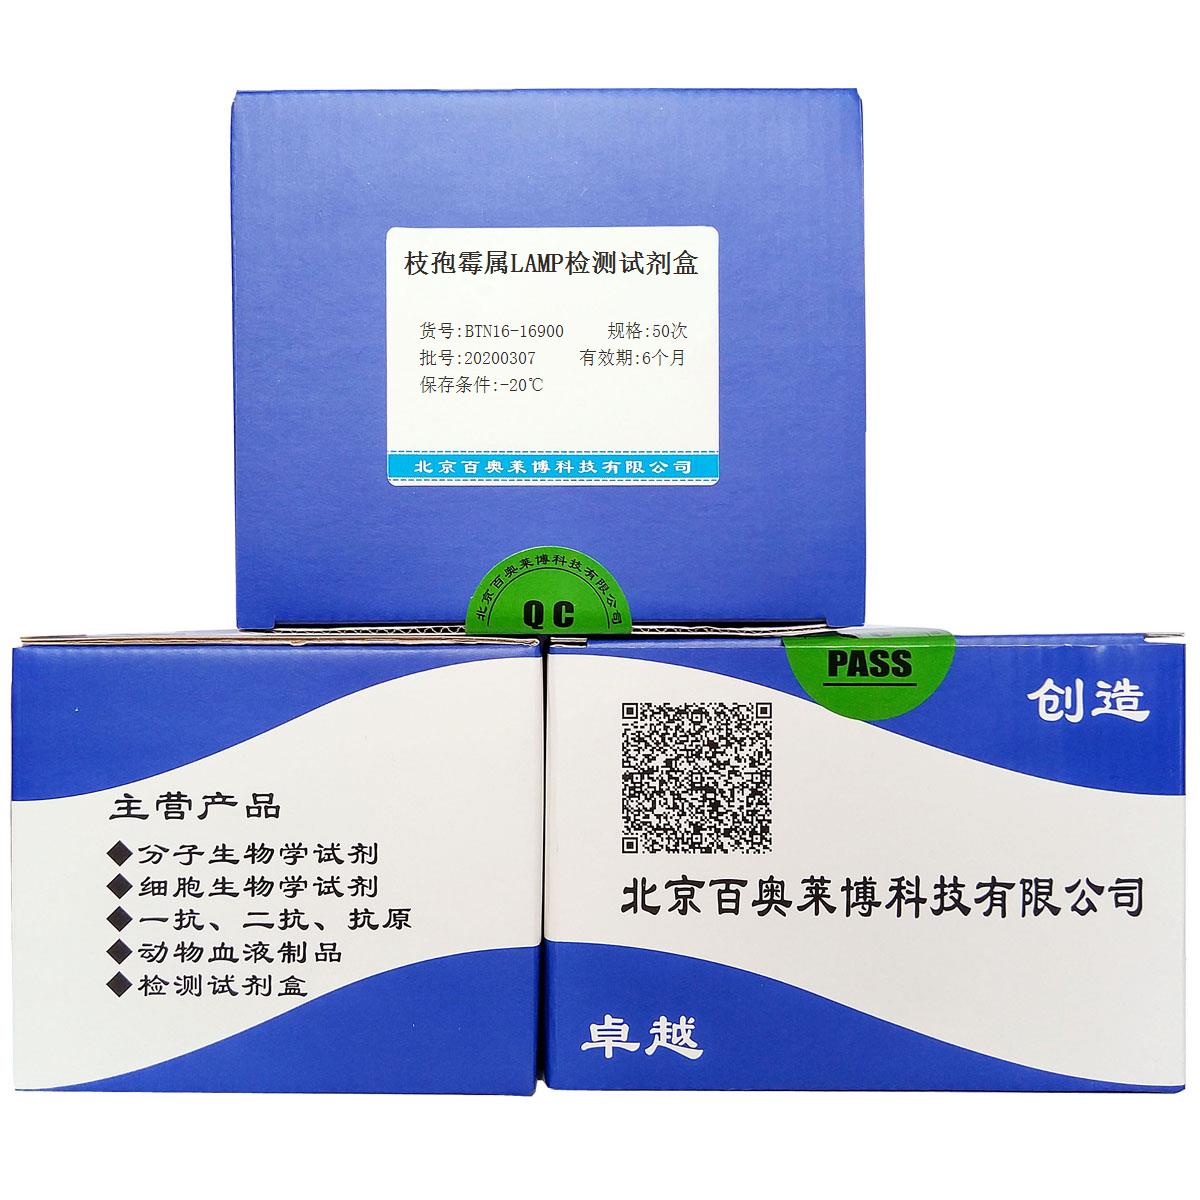 枝孢霉属LAMP检测试剂盒北京厂家